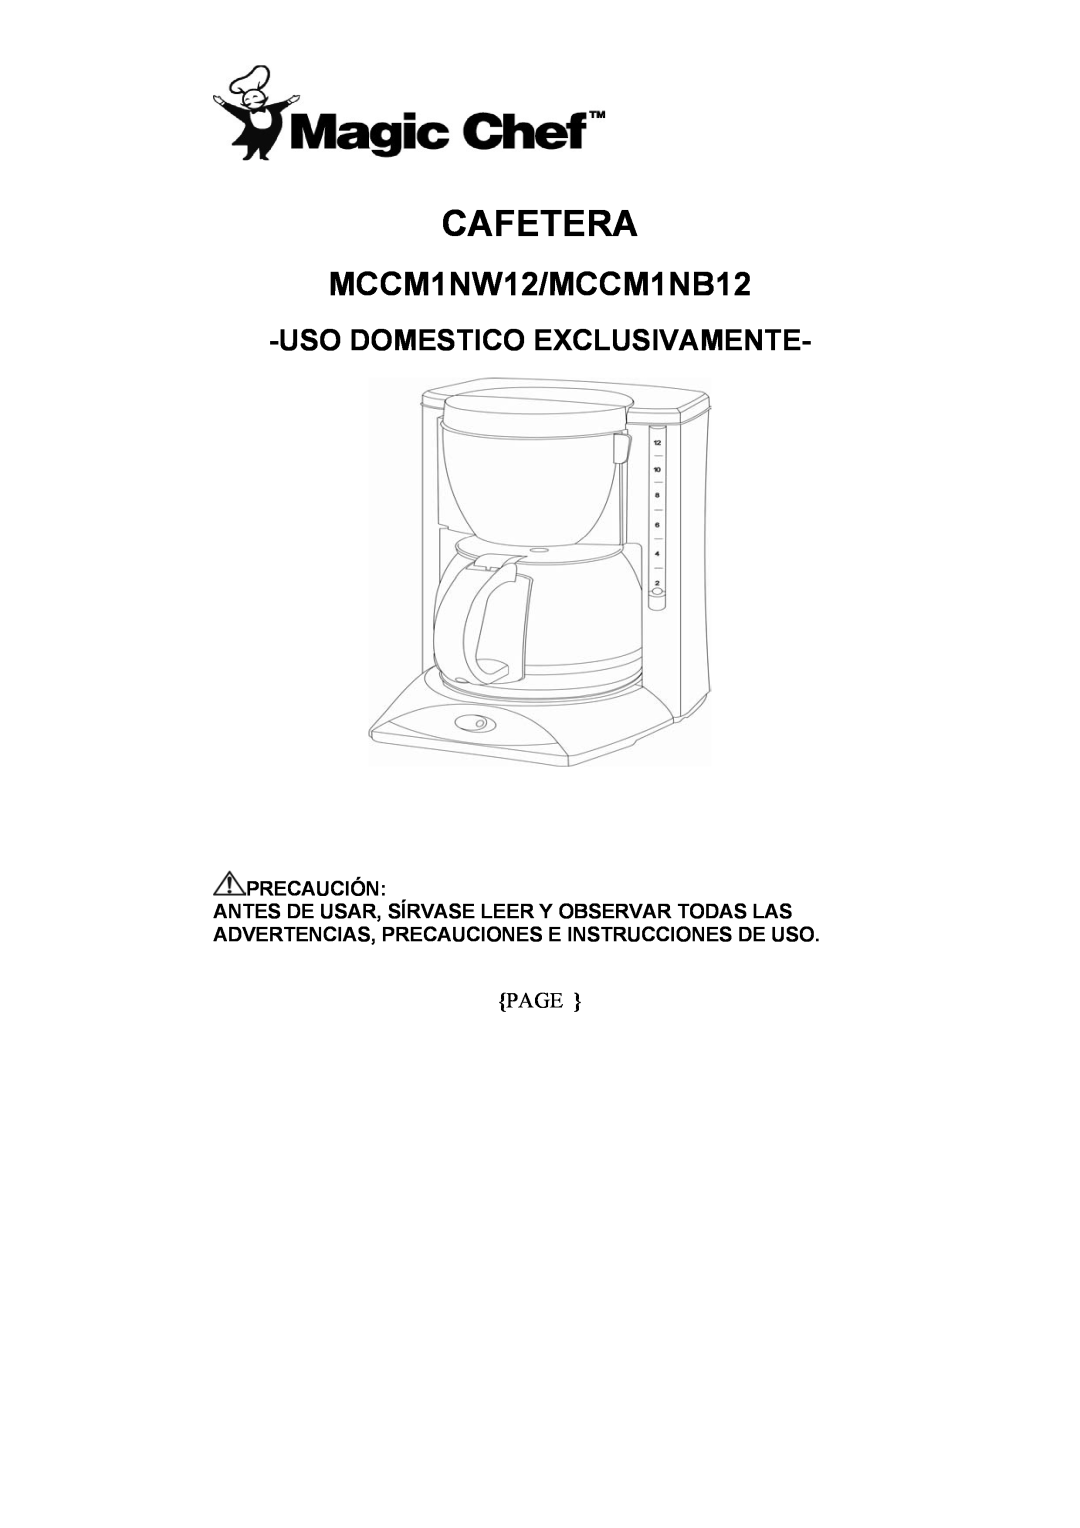 Magic Chef manual Cafetera, Uso Domestico Exclusivamente, MCCM1NW12/MCCM1NB12, Page 